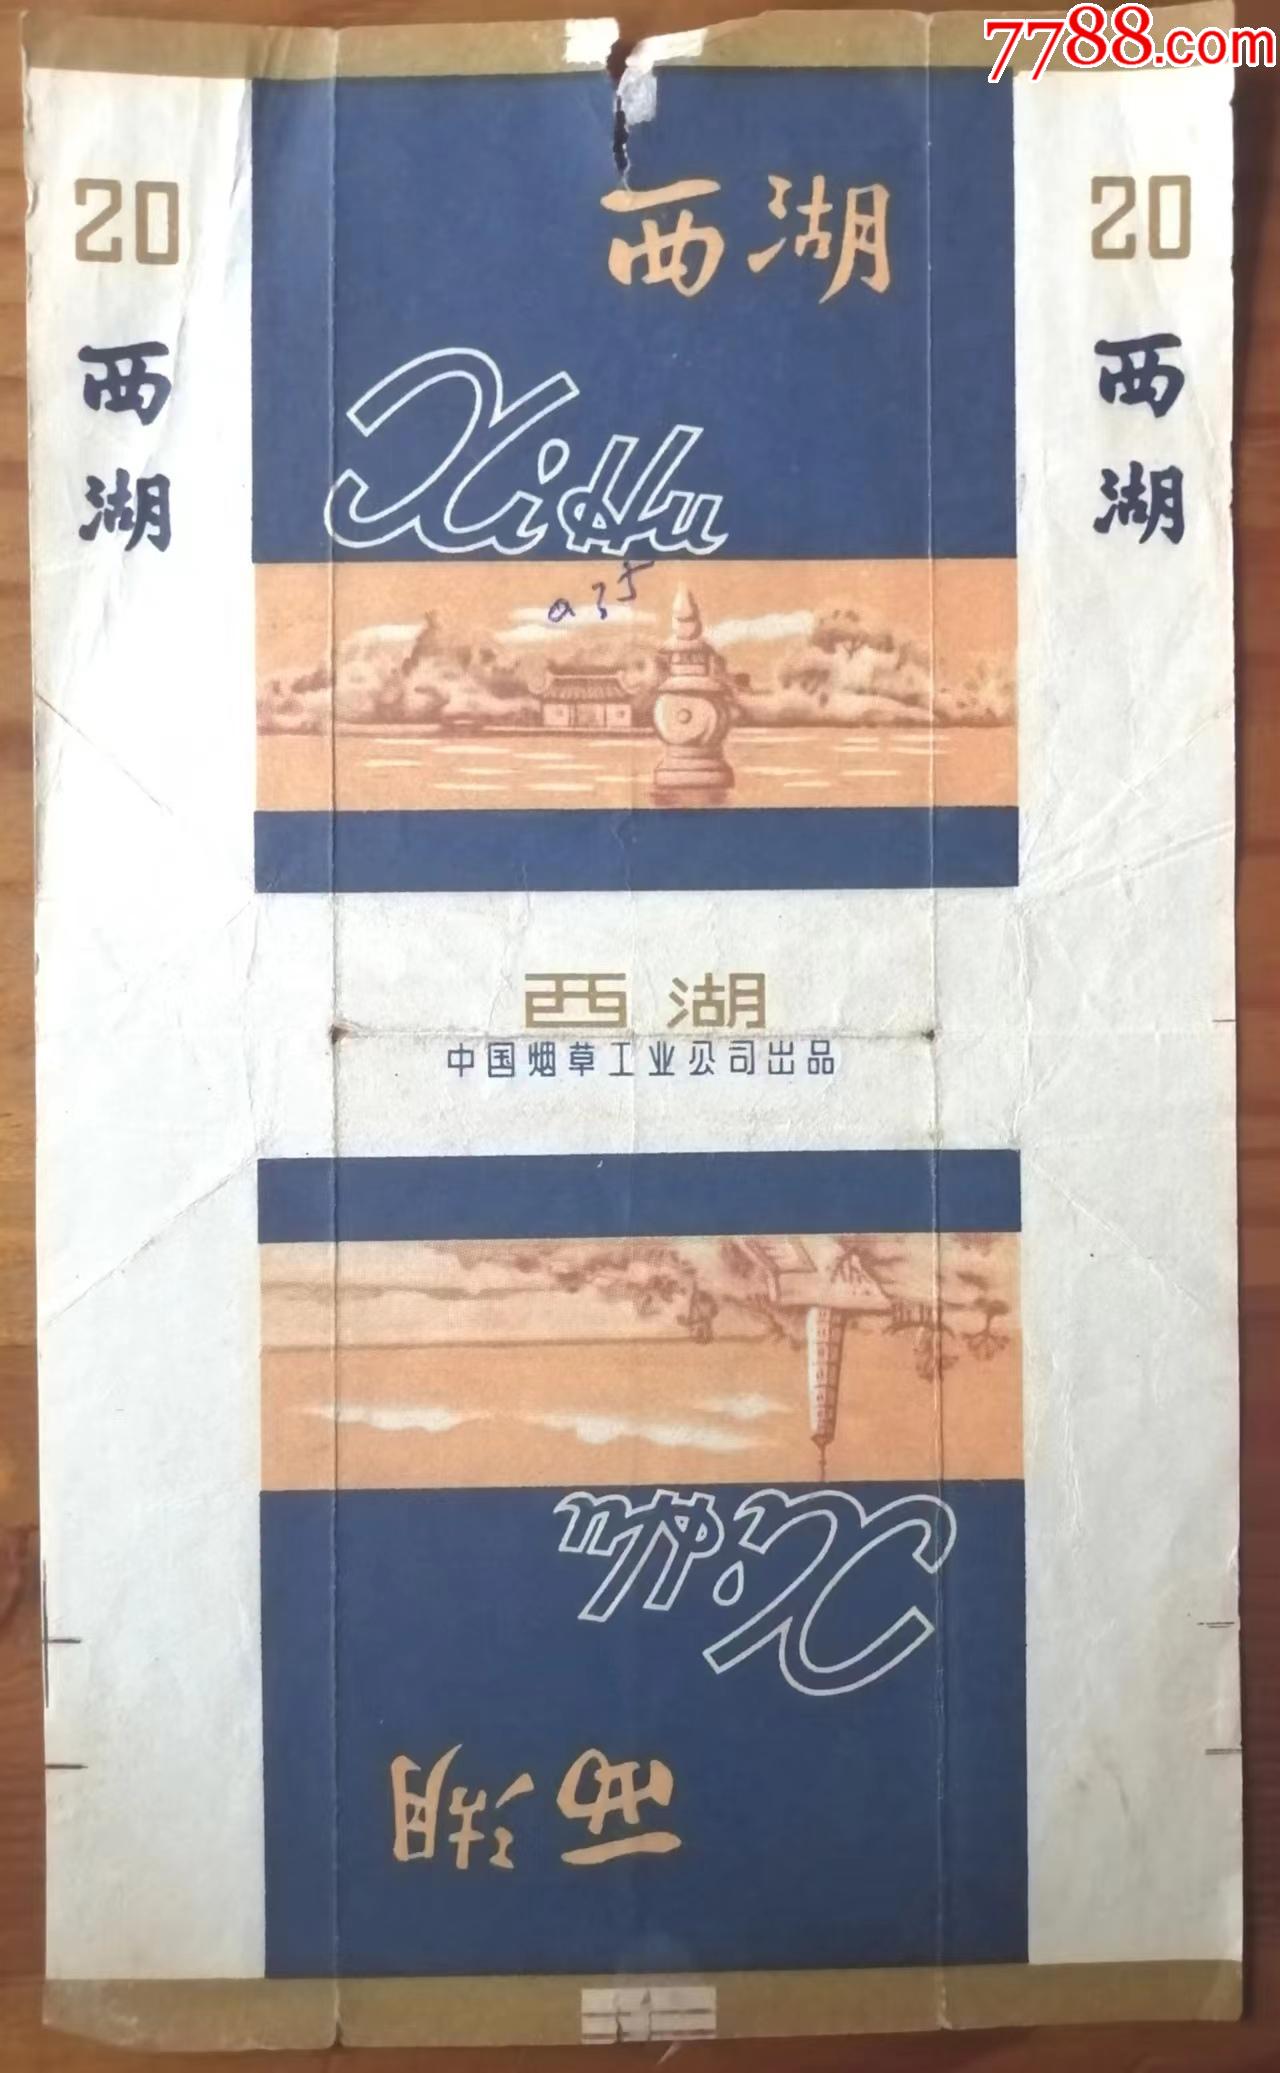 中国烟草工业公司出品的西湖牌烟标品如图